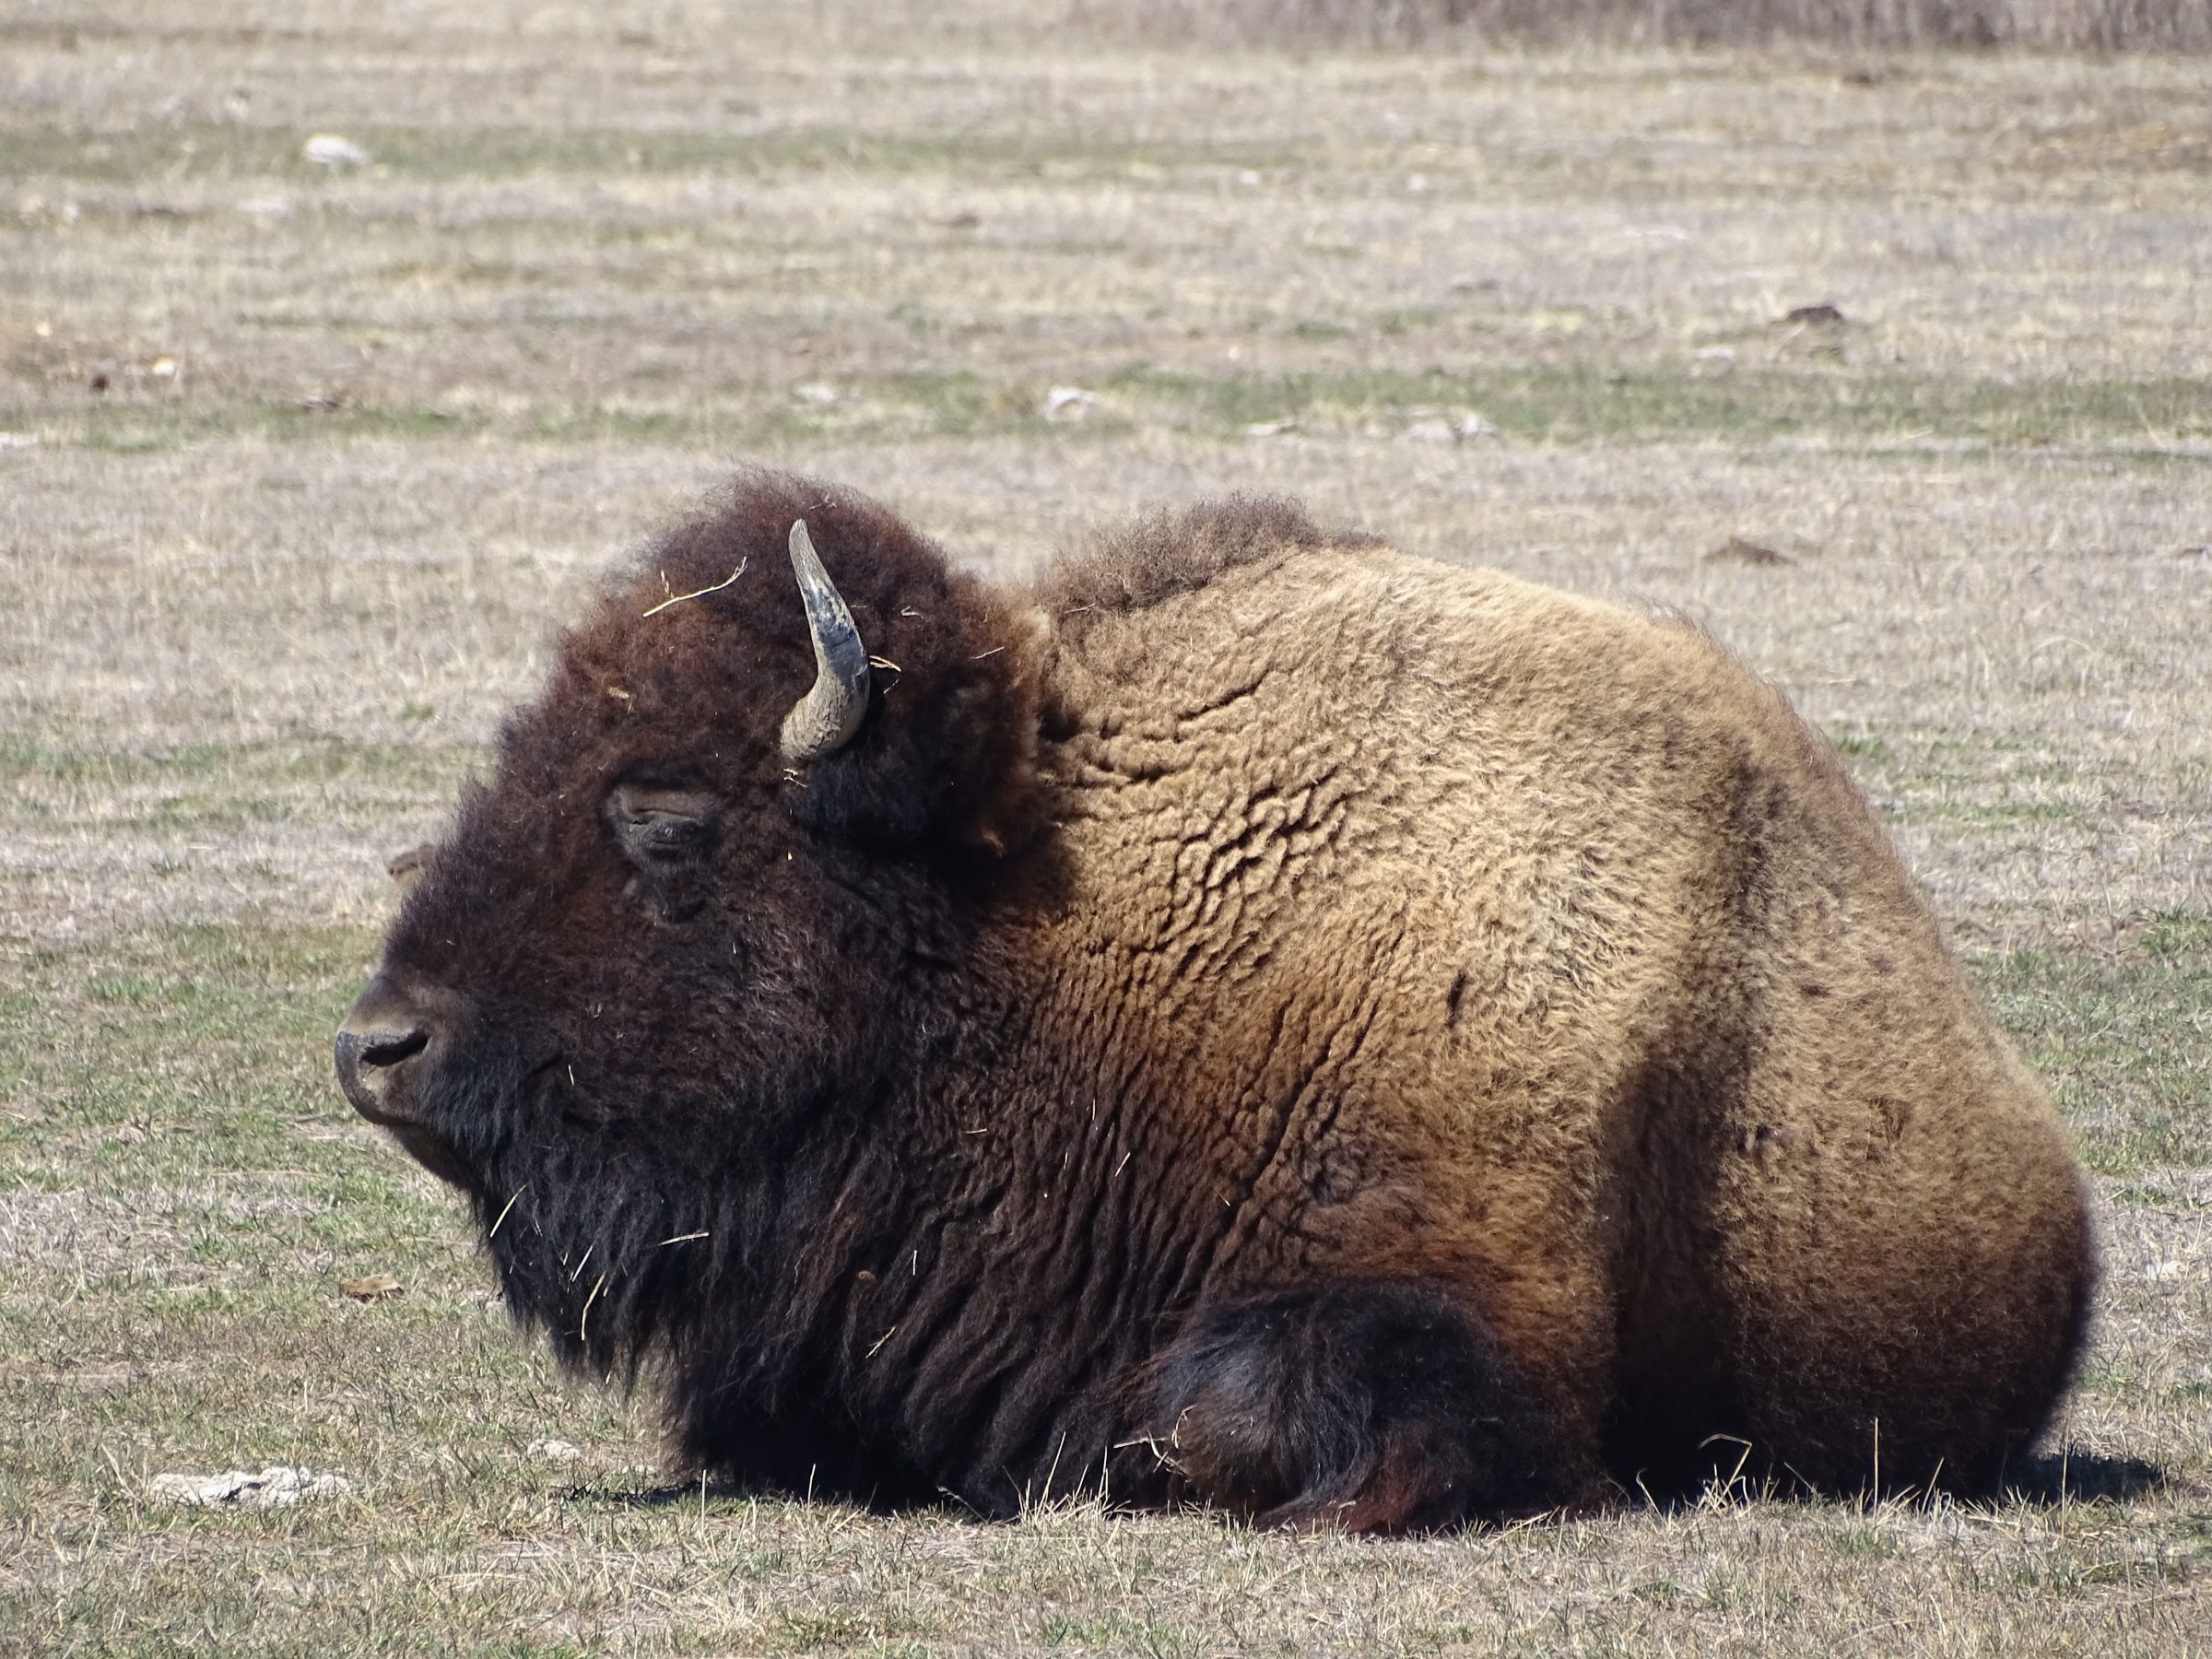 ¡El impresionante bisonte, a pocos metros!